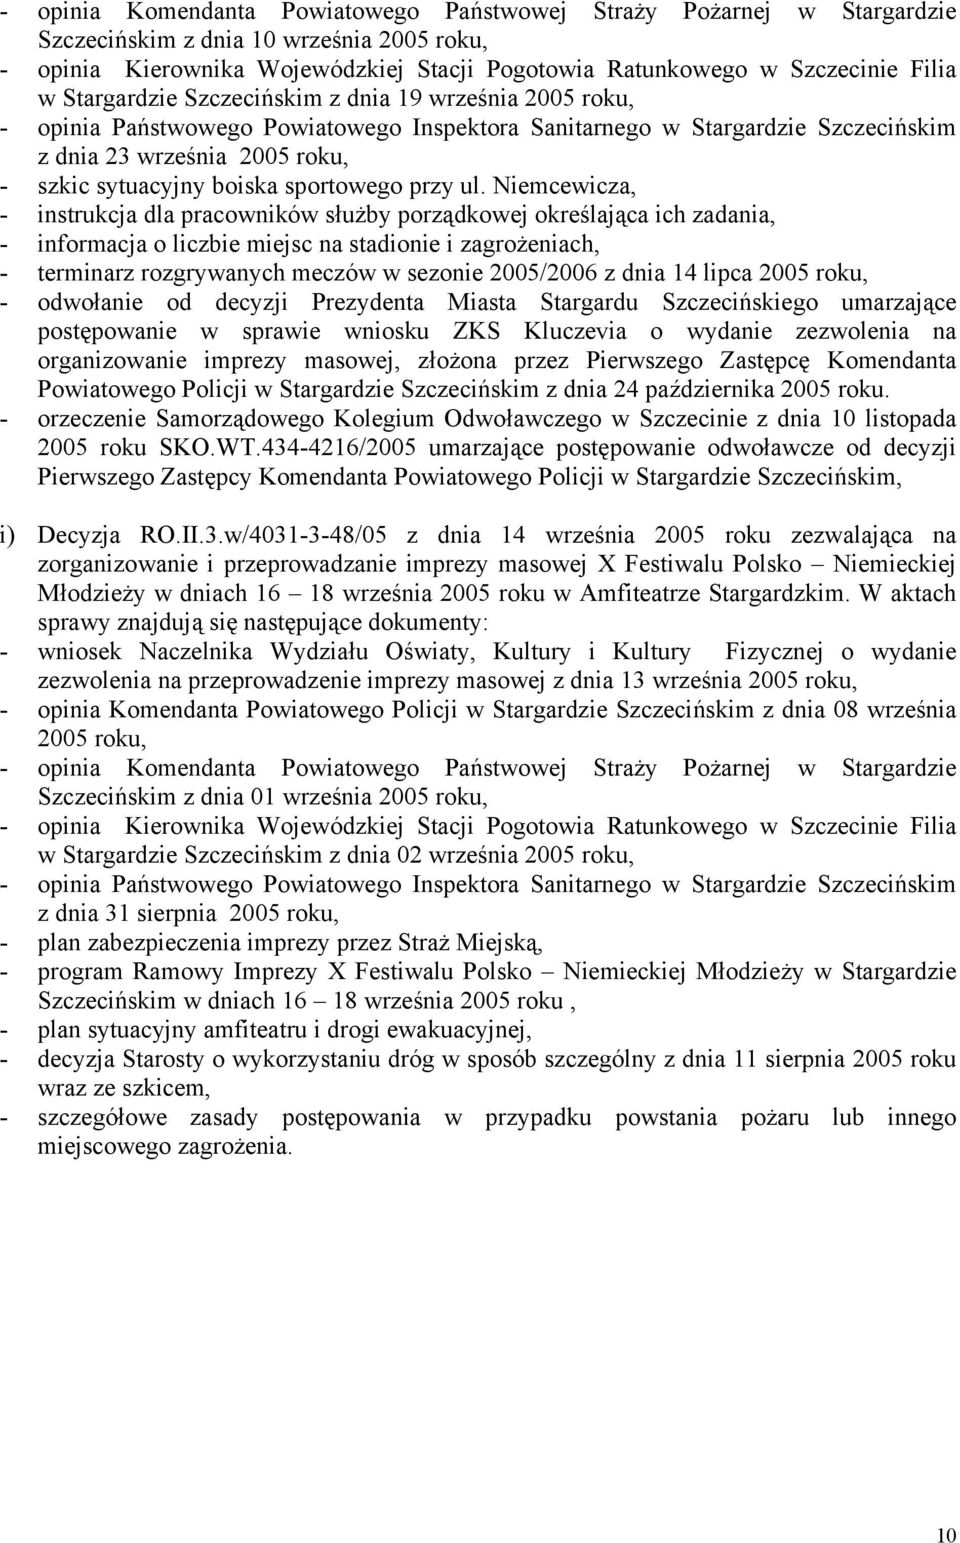 Szczecińskiego umarzające postępowanie w sprawie wniosku ZKS Kluczevia o wydanie zezwolenia na organizowanie imprezy masowej, złożona przez Pierwszego Zastępcę Komendanta Powiatowego Policji w